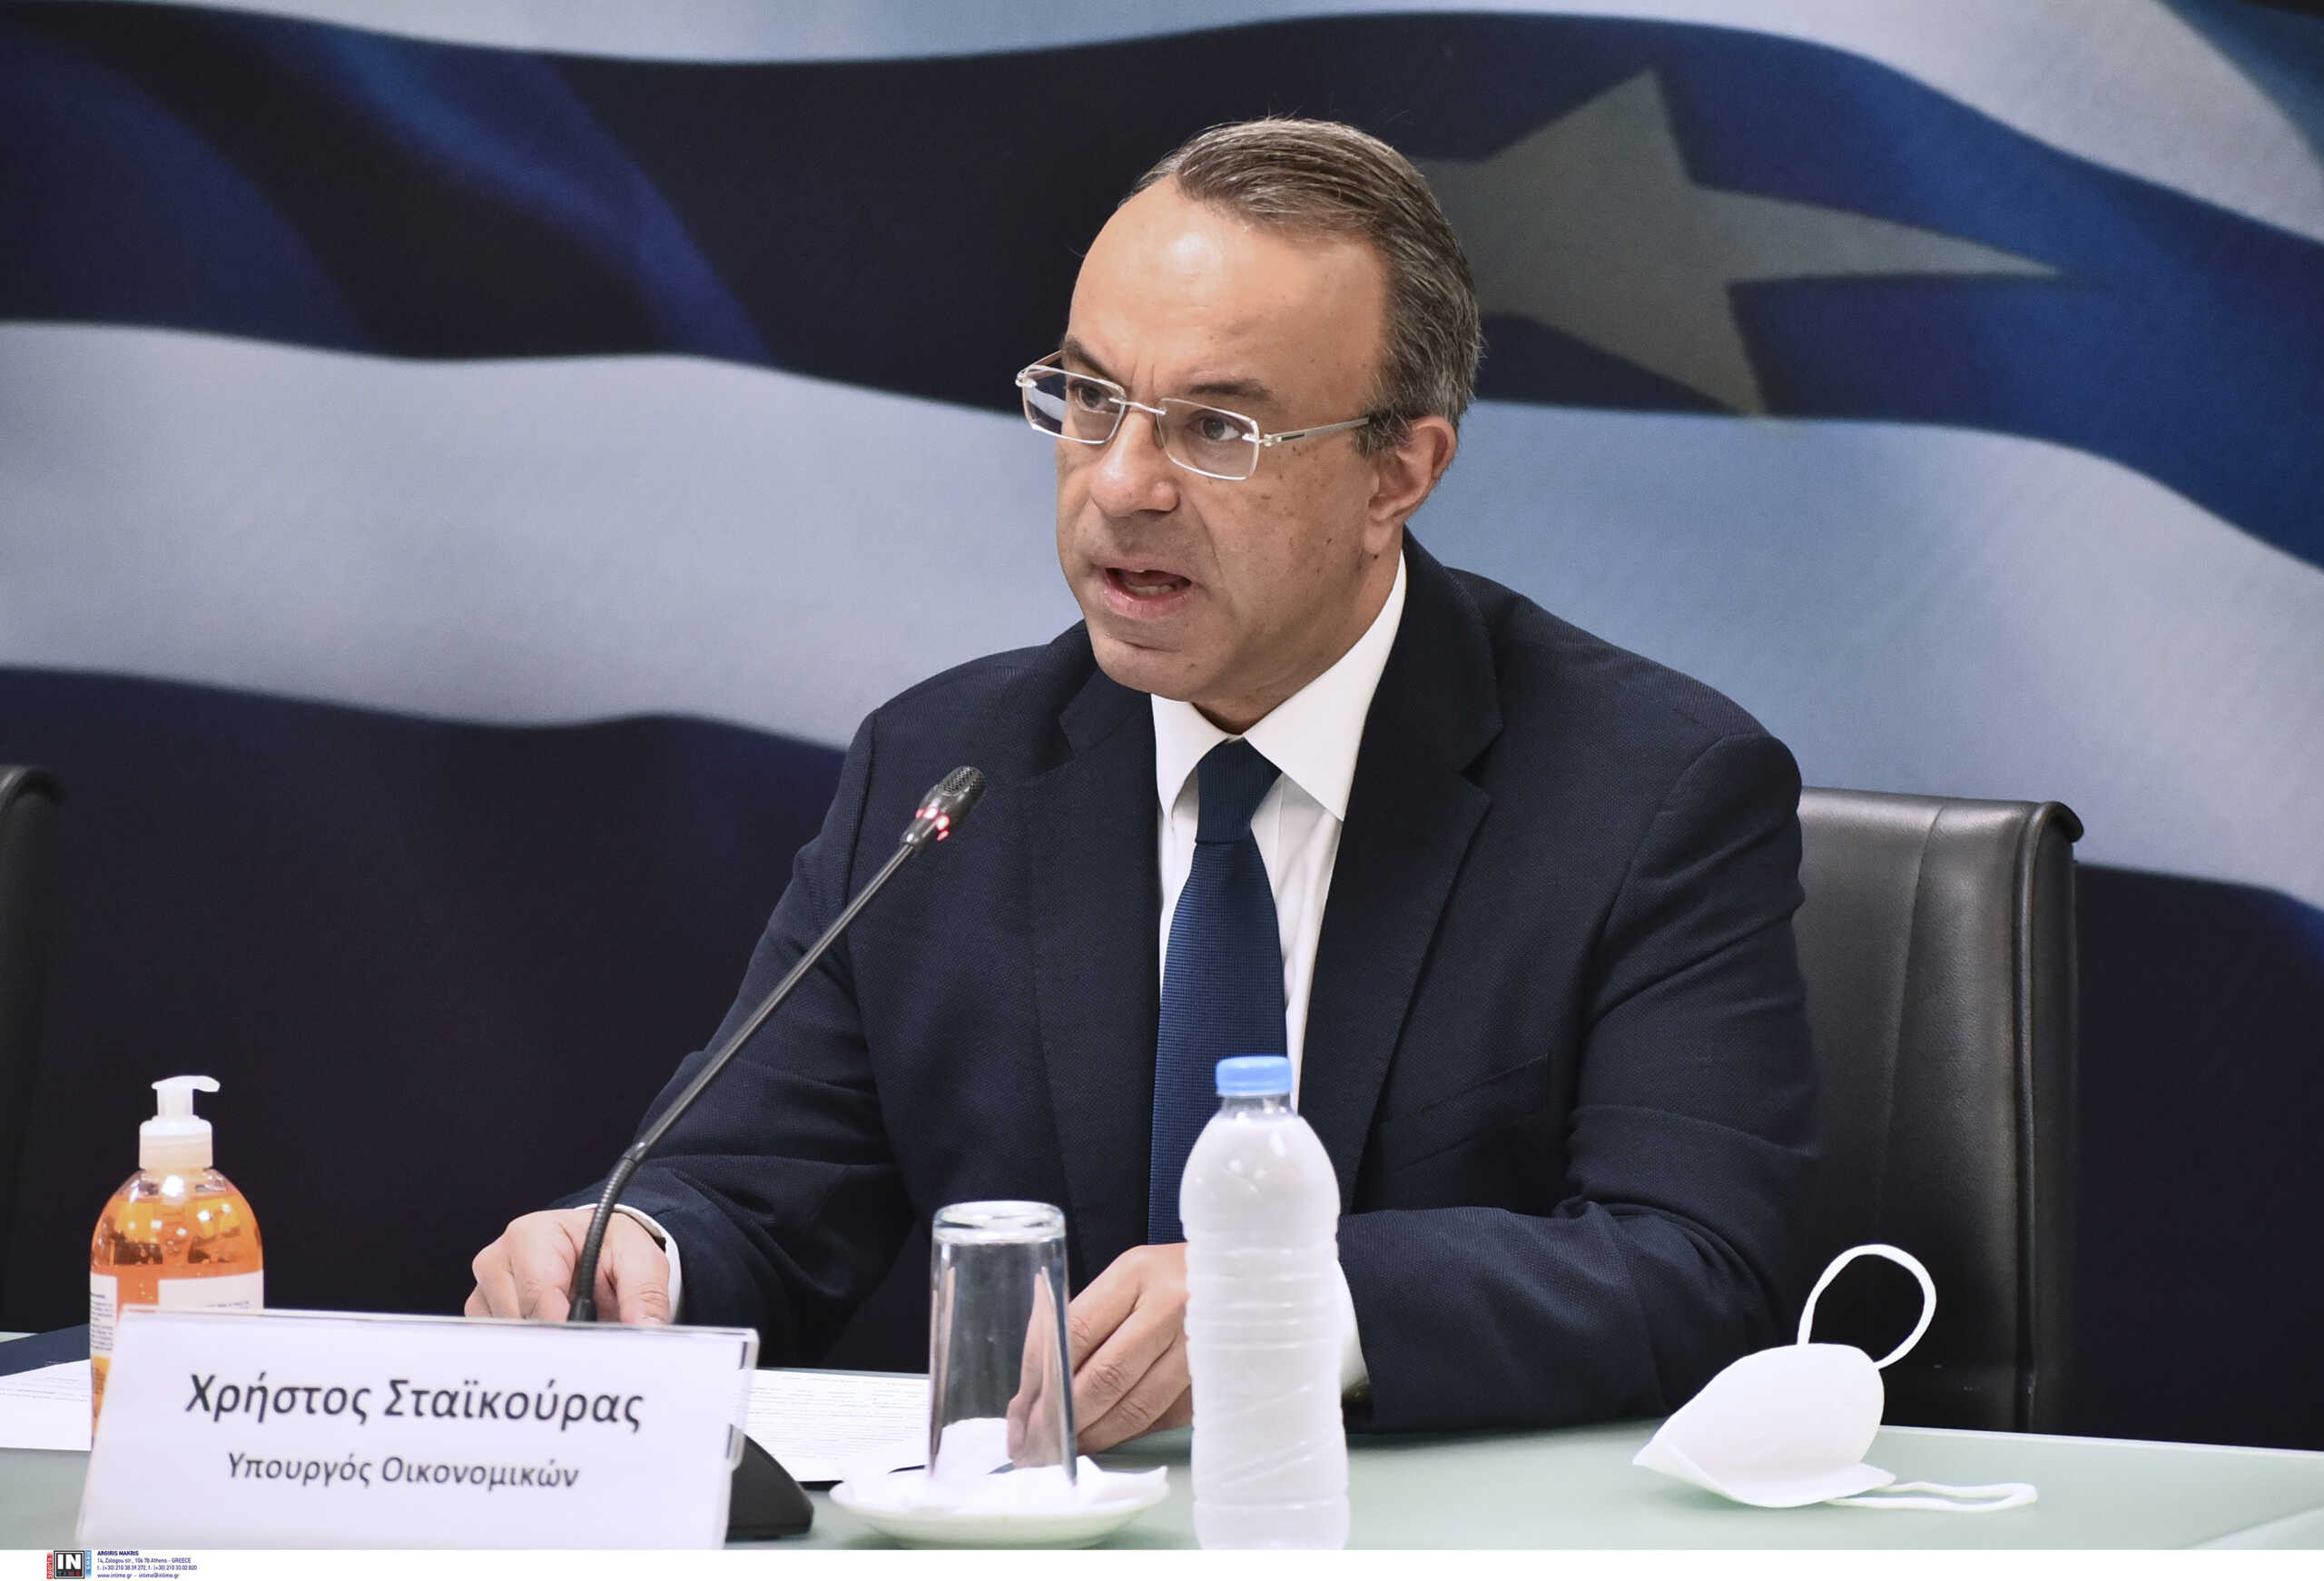 Σταϊκούρας: «Η ανθεκτικότητα και η δυναμική της ελληνικής οικονομίας επιβεβαιώνεται από την αύξηση του ΑΕΠ»